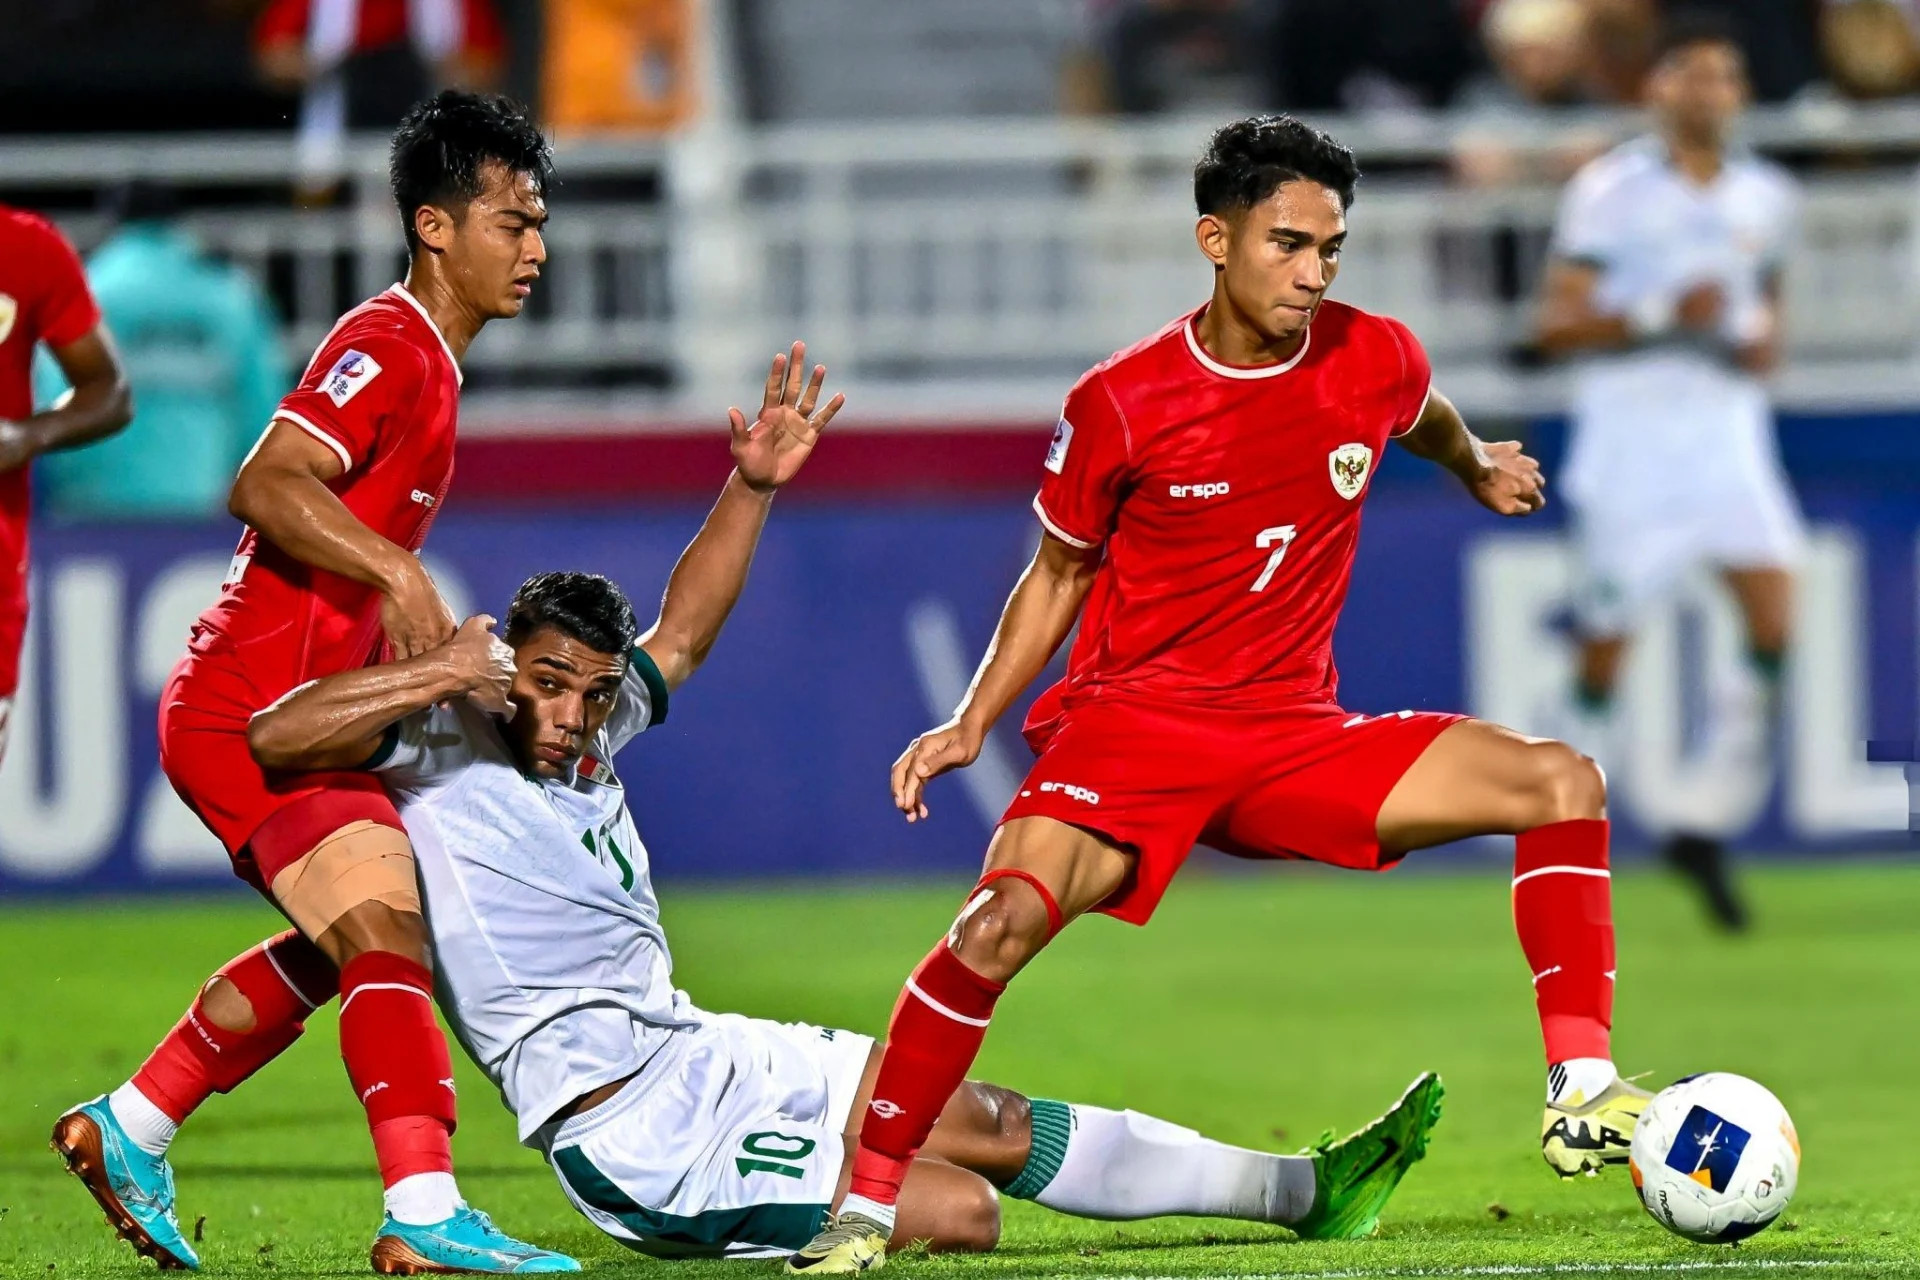  Trực tiếp bóng đá Indonesia 0-1 Iraq: Aymen mở tỷ số trên chấm 11m